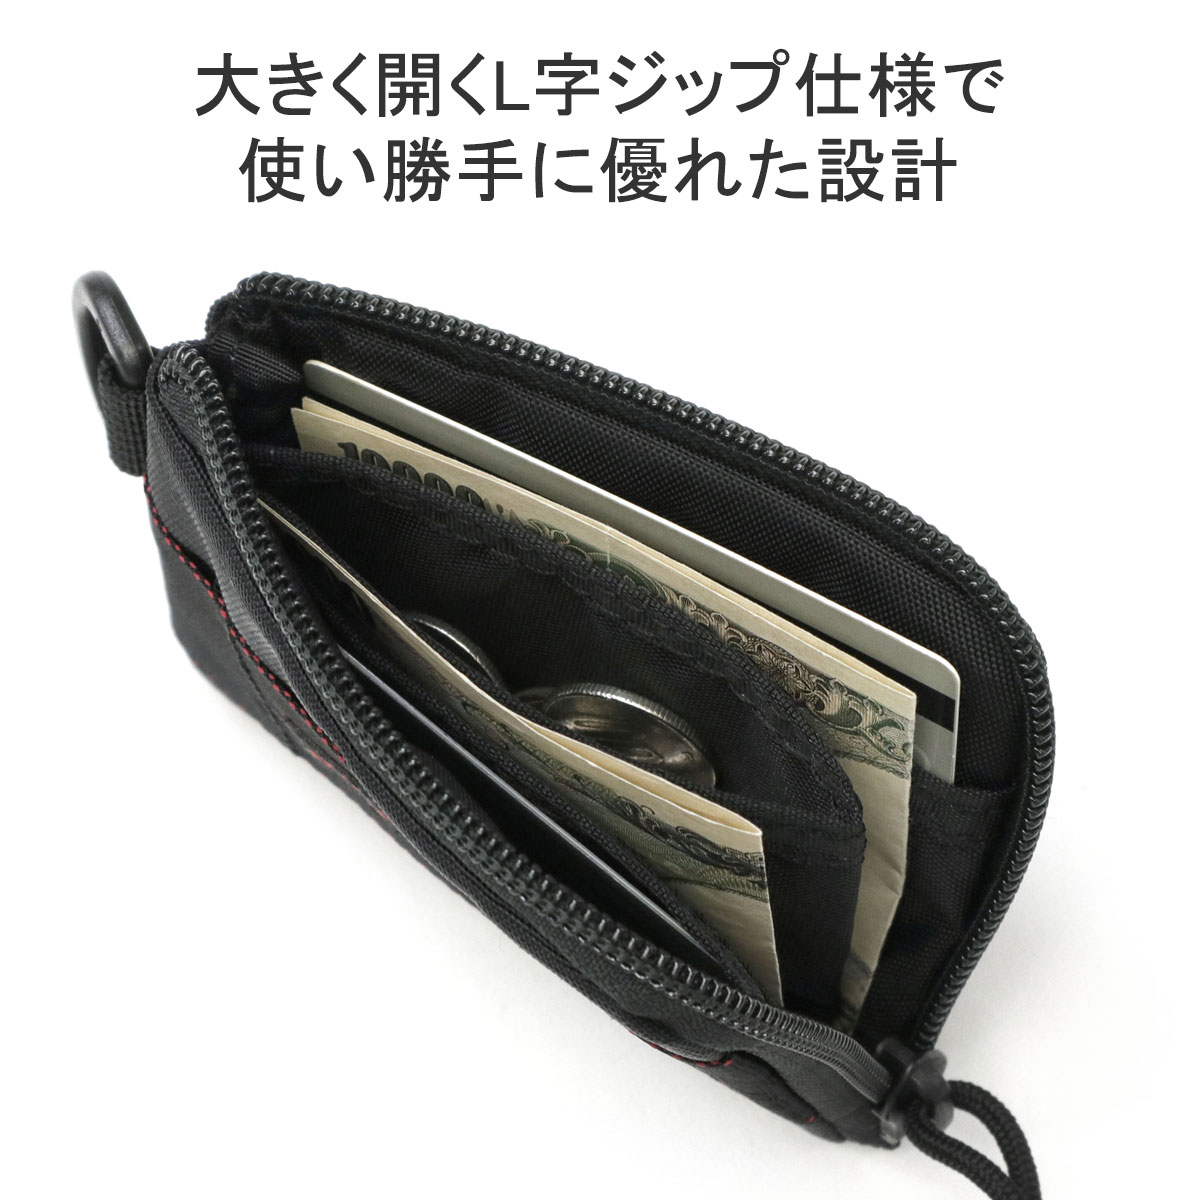 最大40% 4/28限定 日本正規品 ブリーフィング 財布 メンズ 